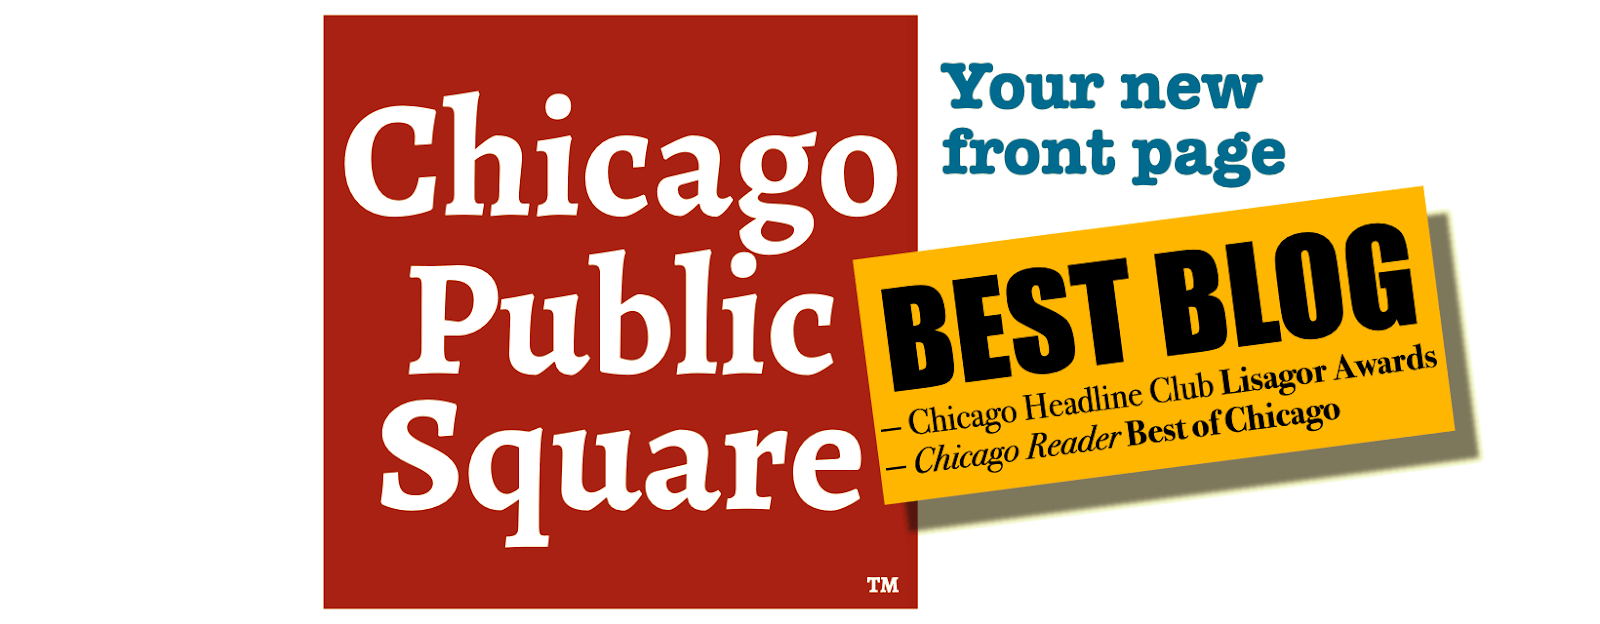 chicago-public-square